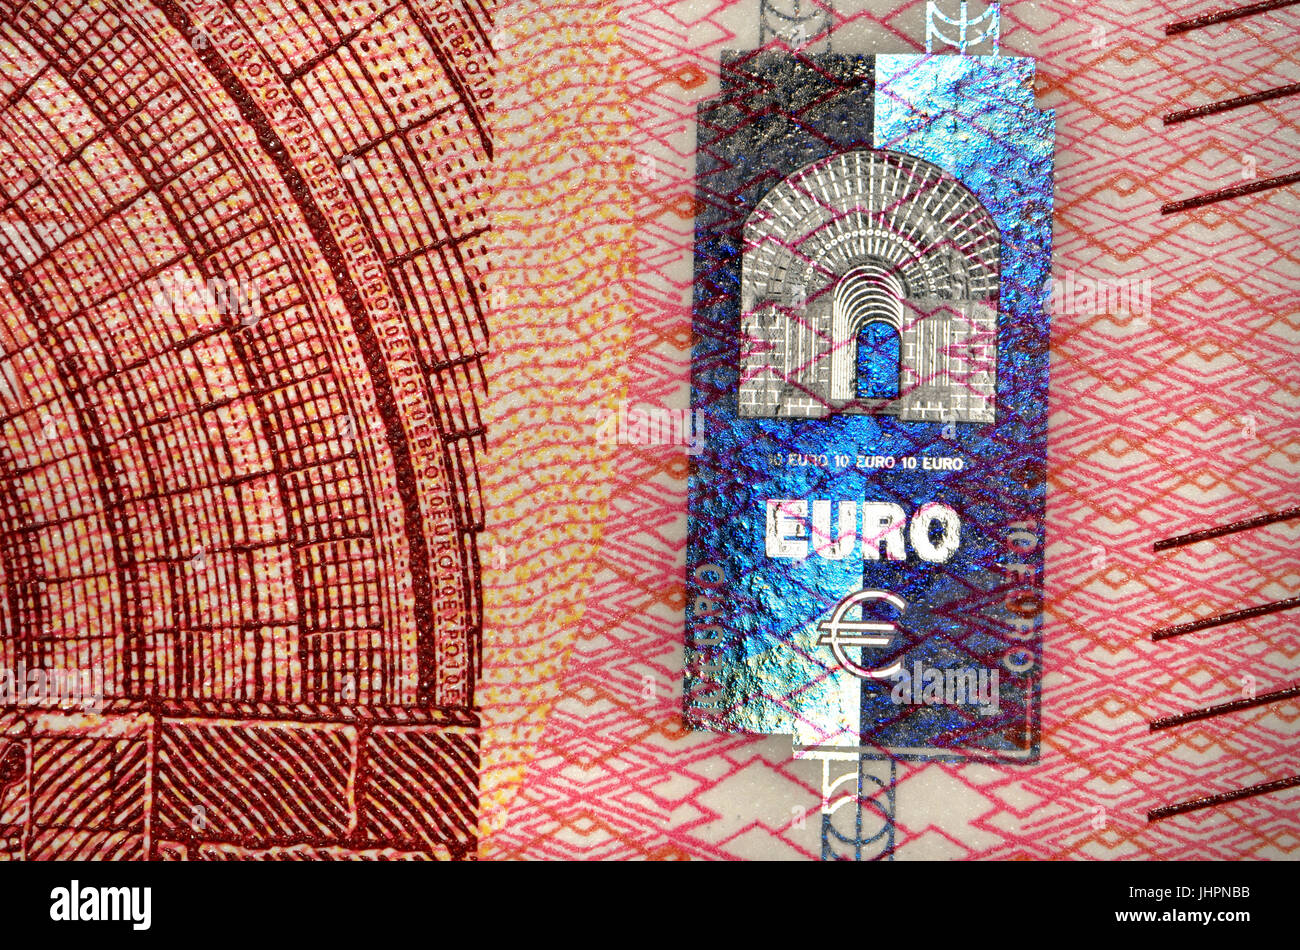 10 euros Détail montrant des caractéristiques de sécurité anti-contrefaçon - nouvelle série "Europa", hologramme Banque D'Images